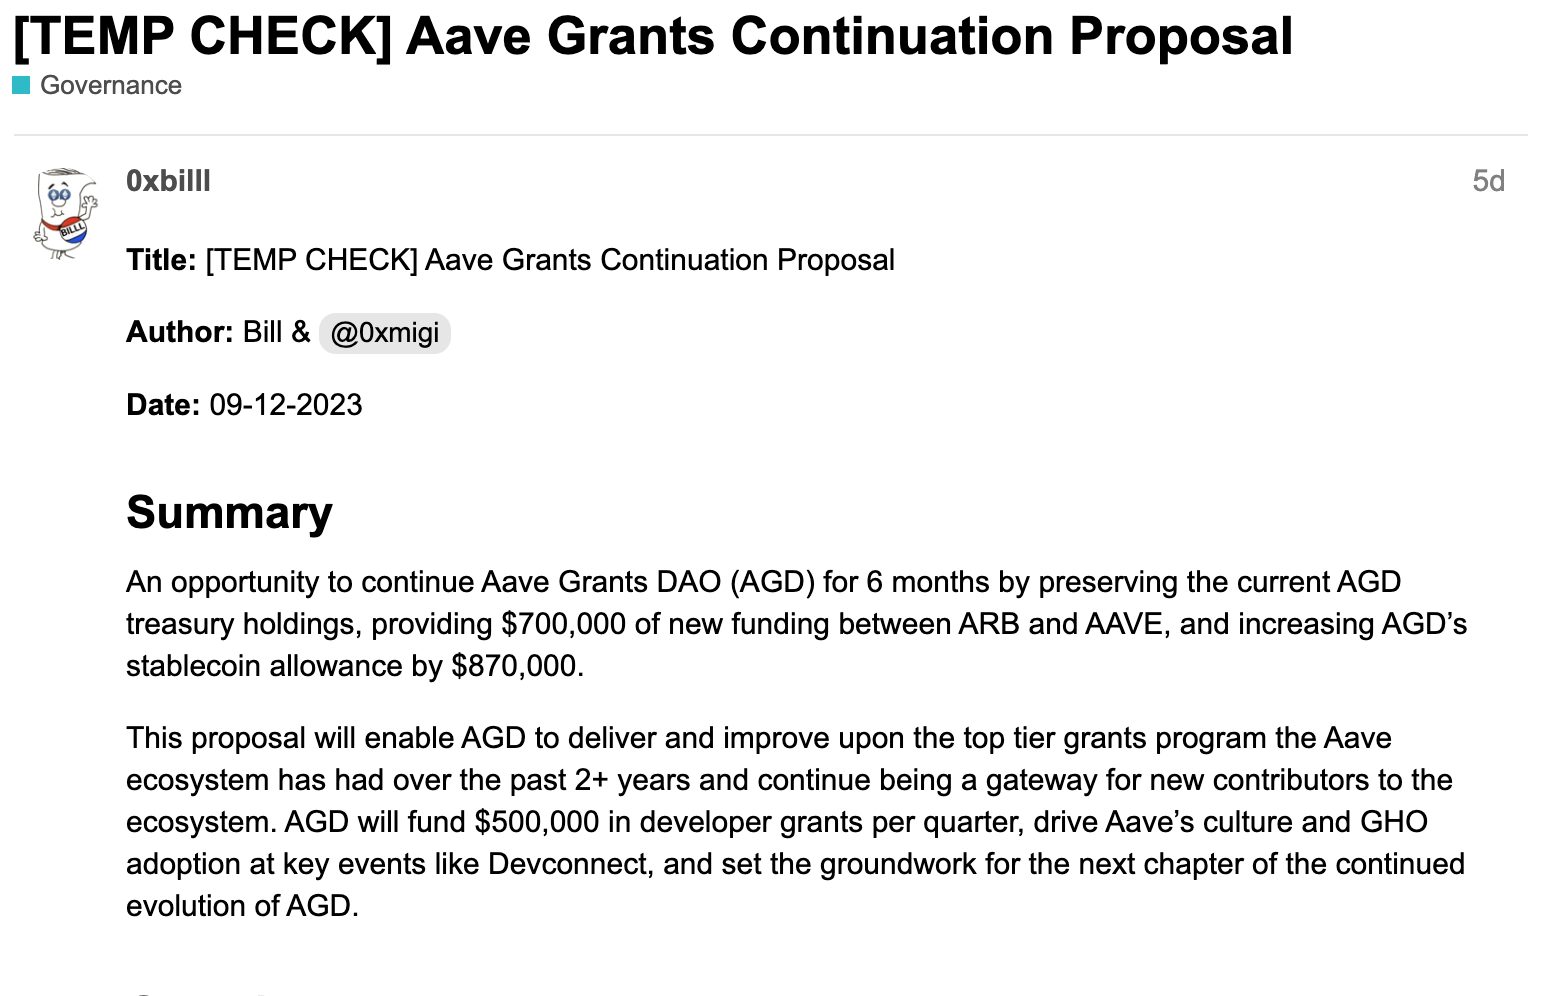 đề xuất duy trì chương trình aave grants dao